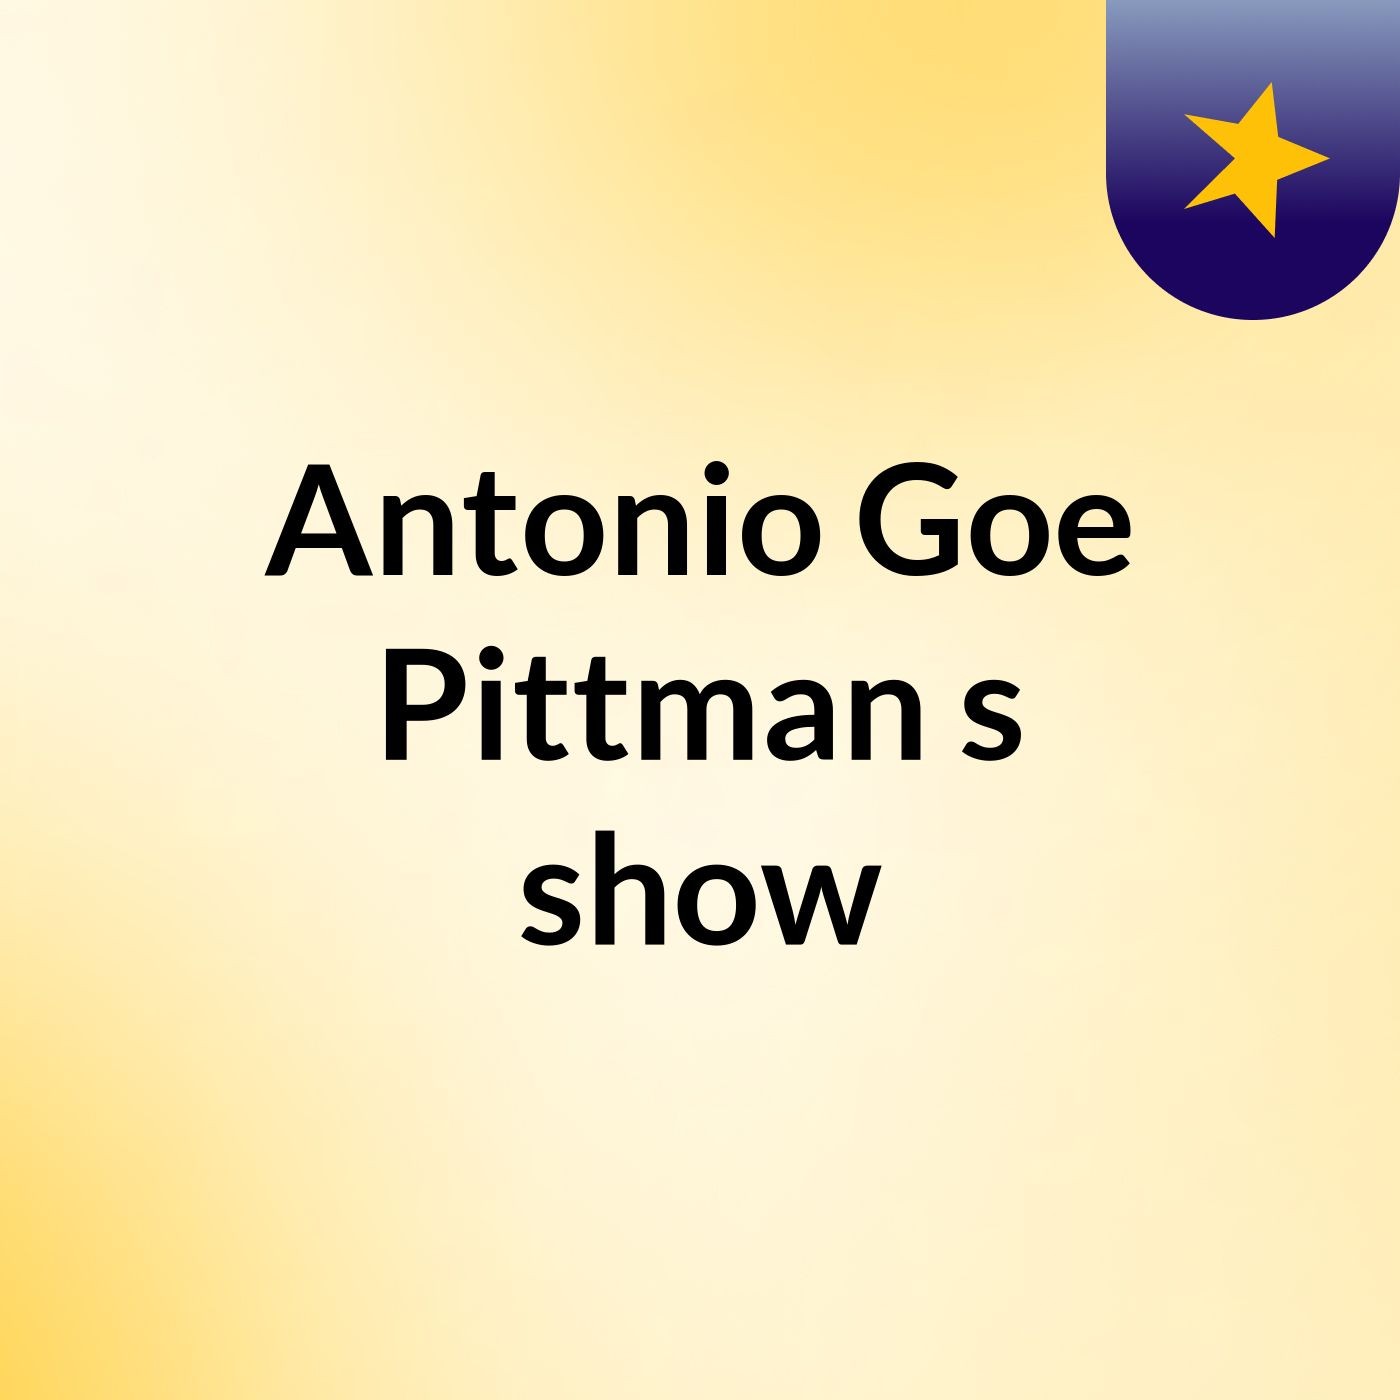 Episode 3 - Antonio Goe Pittman's show